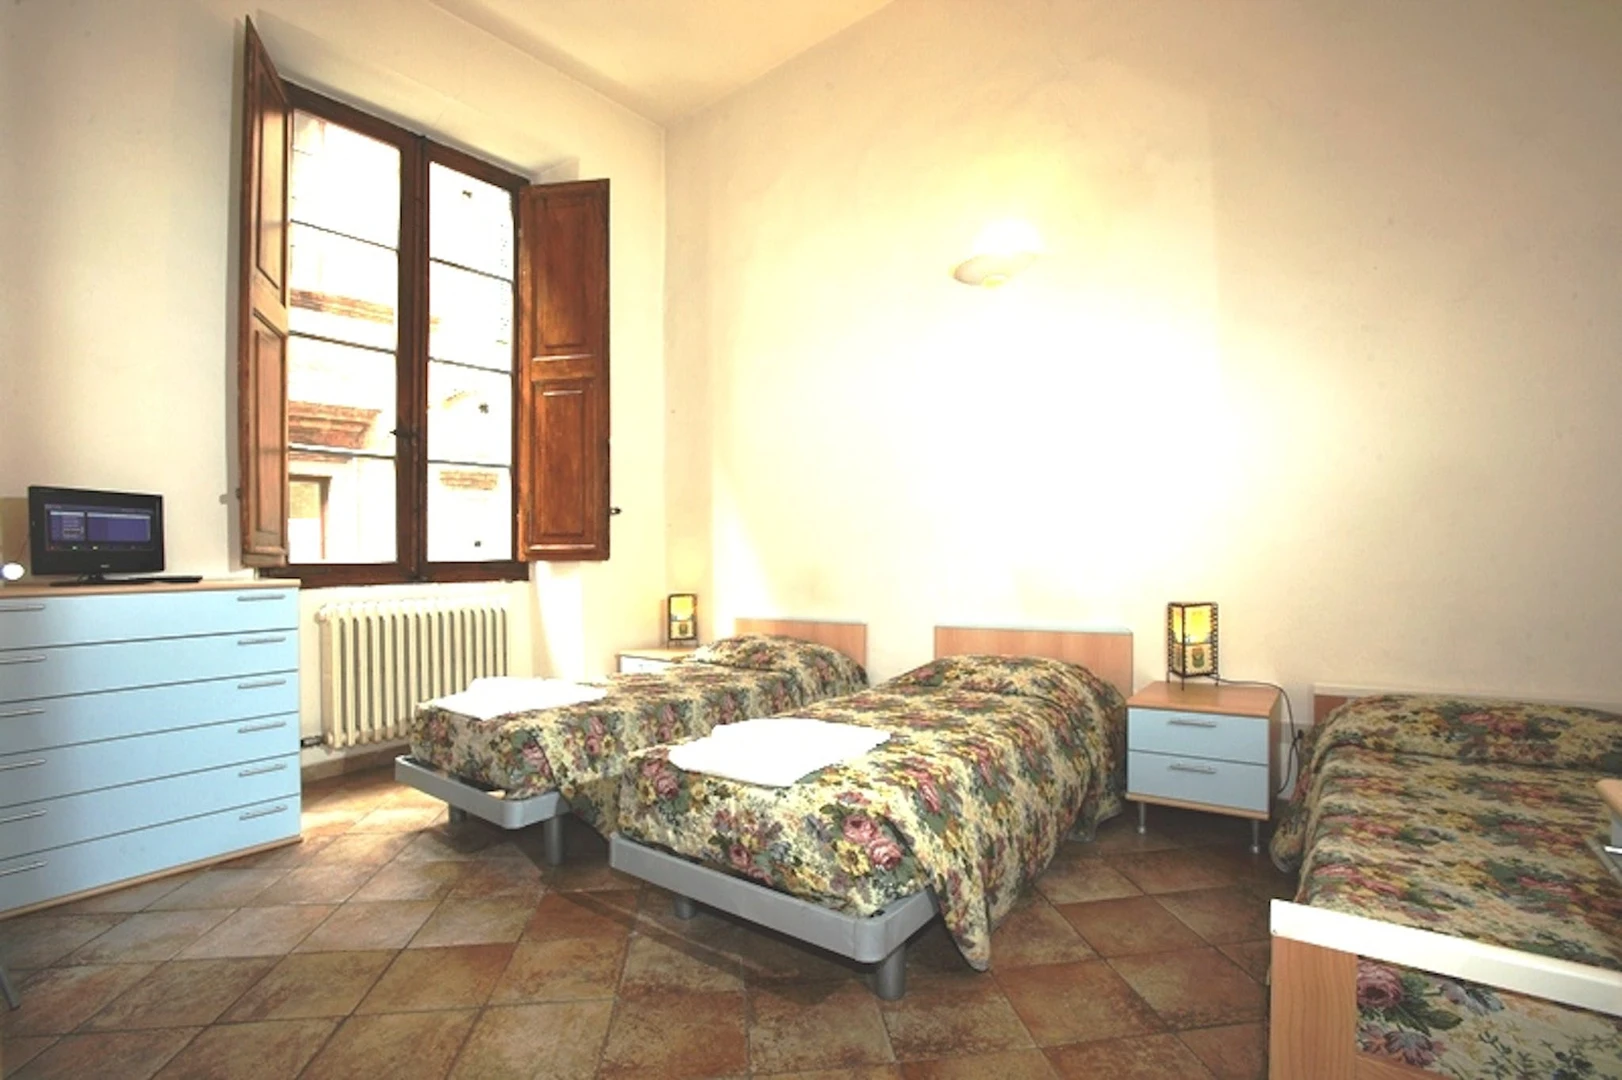 Gemeinsames Zimmer mit einem anderen Studierenden in Siena